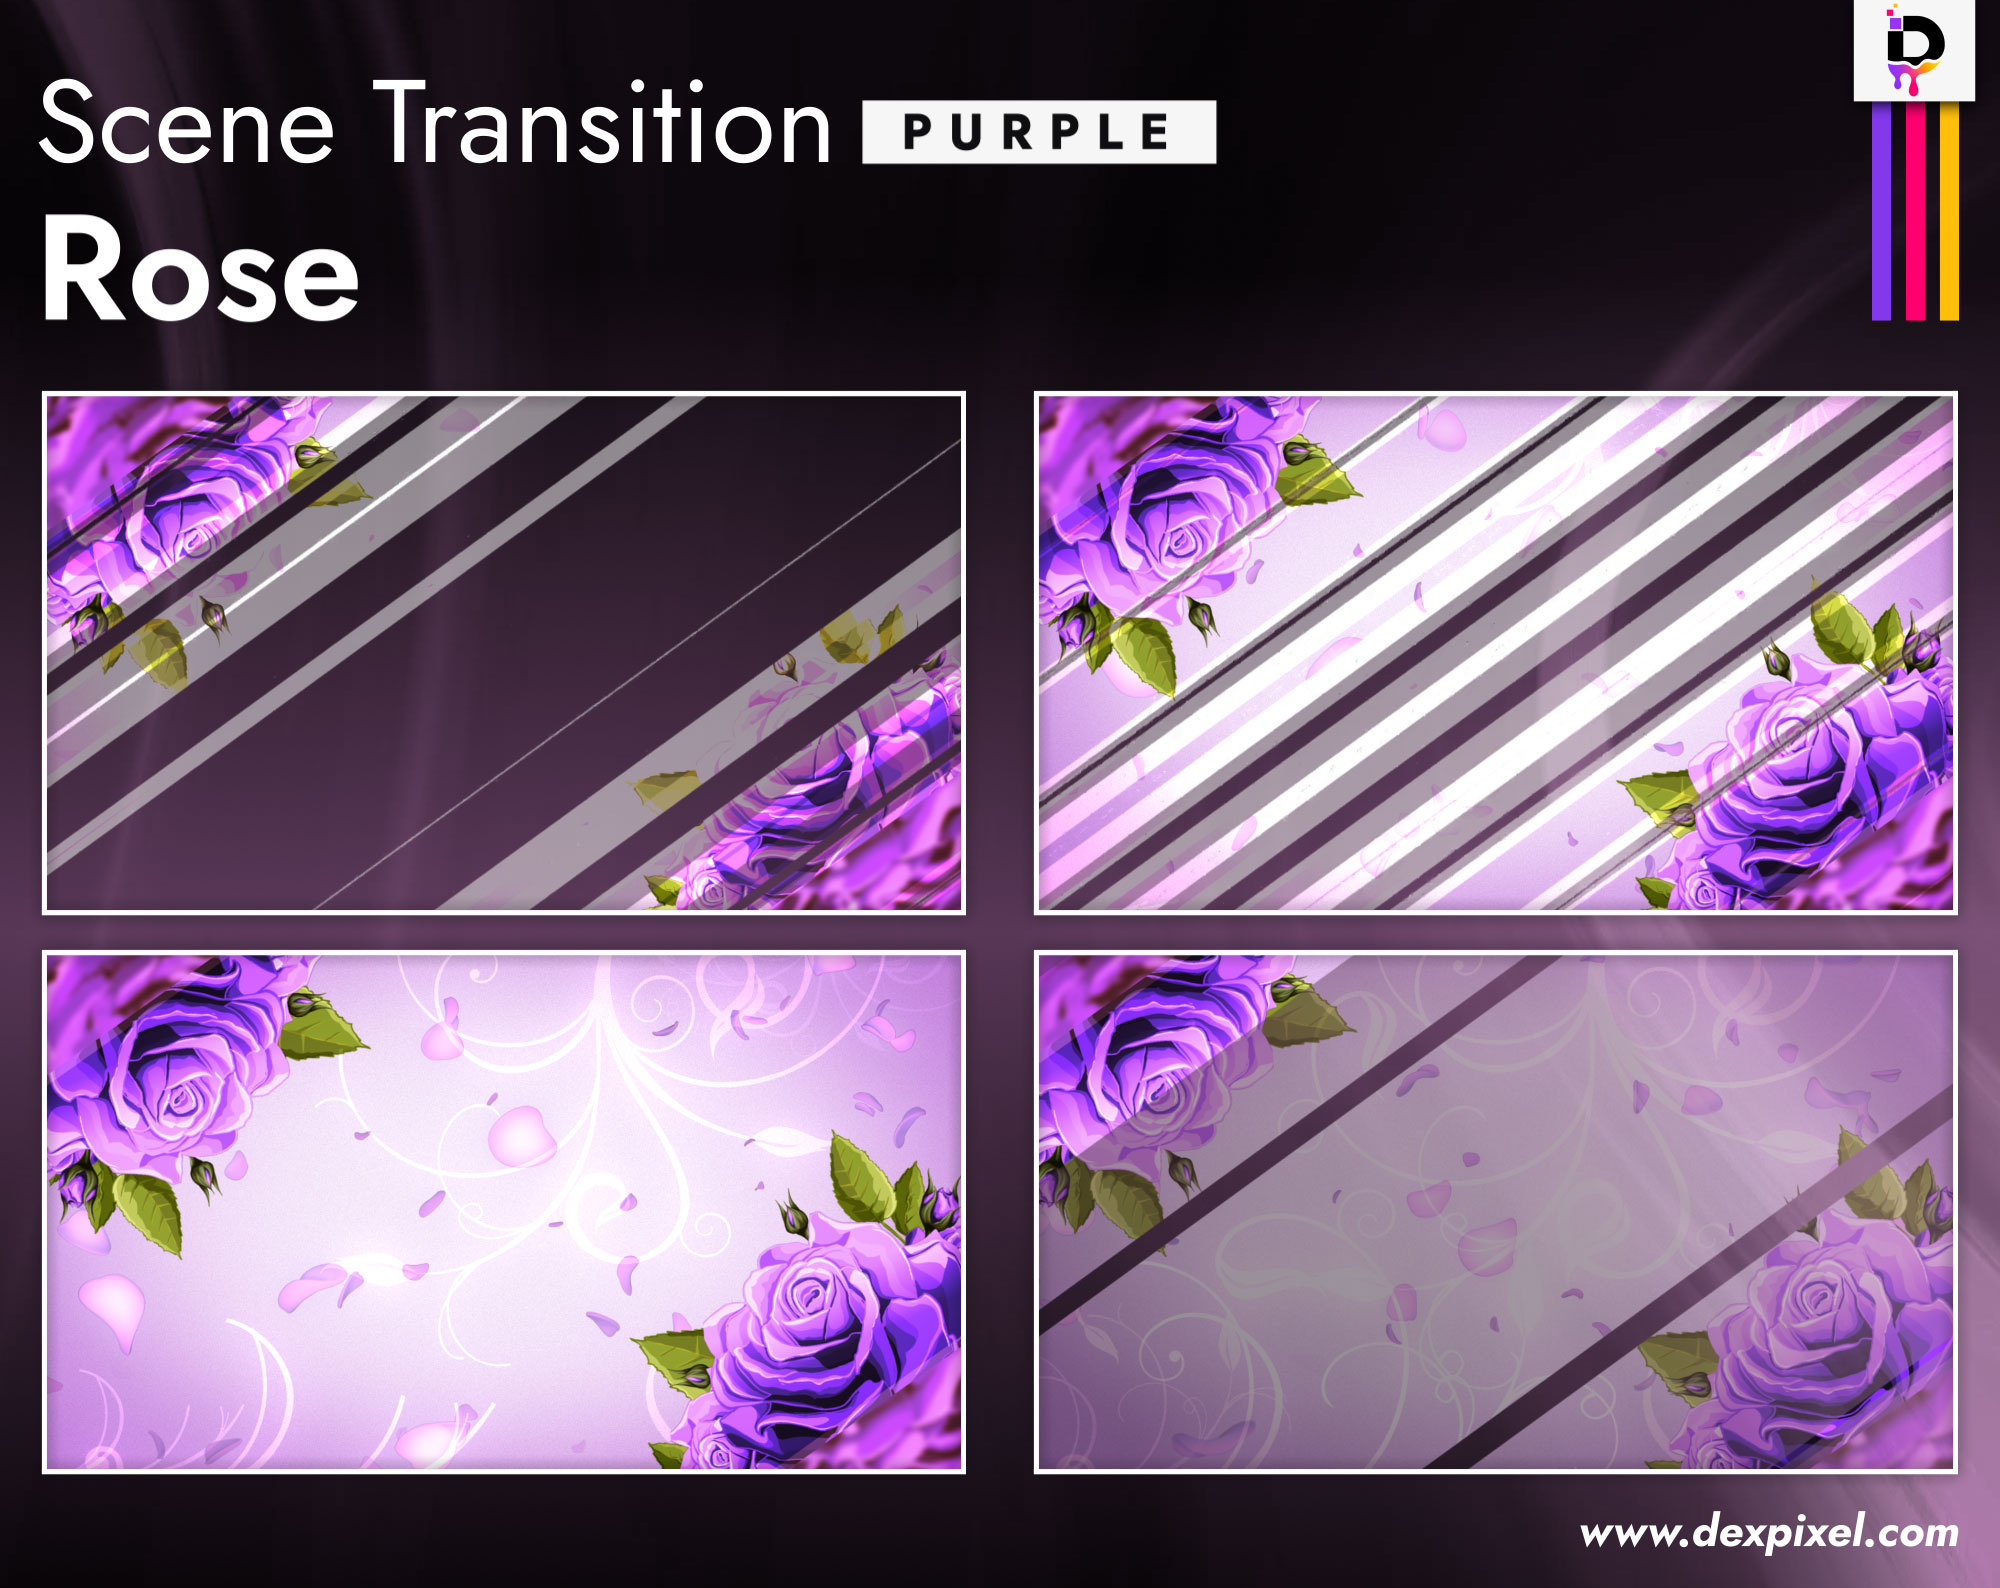 Scene Transition Dexpixel Thumbnail Rose Purple